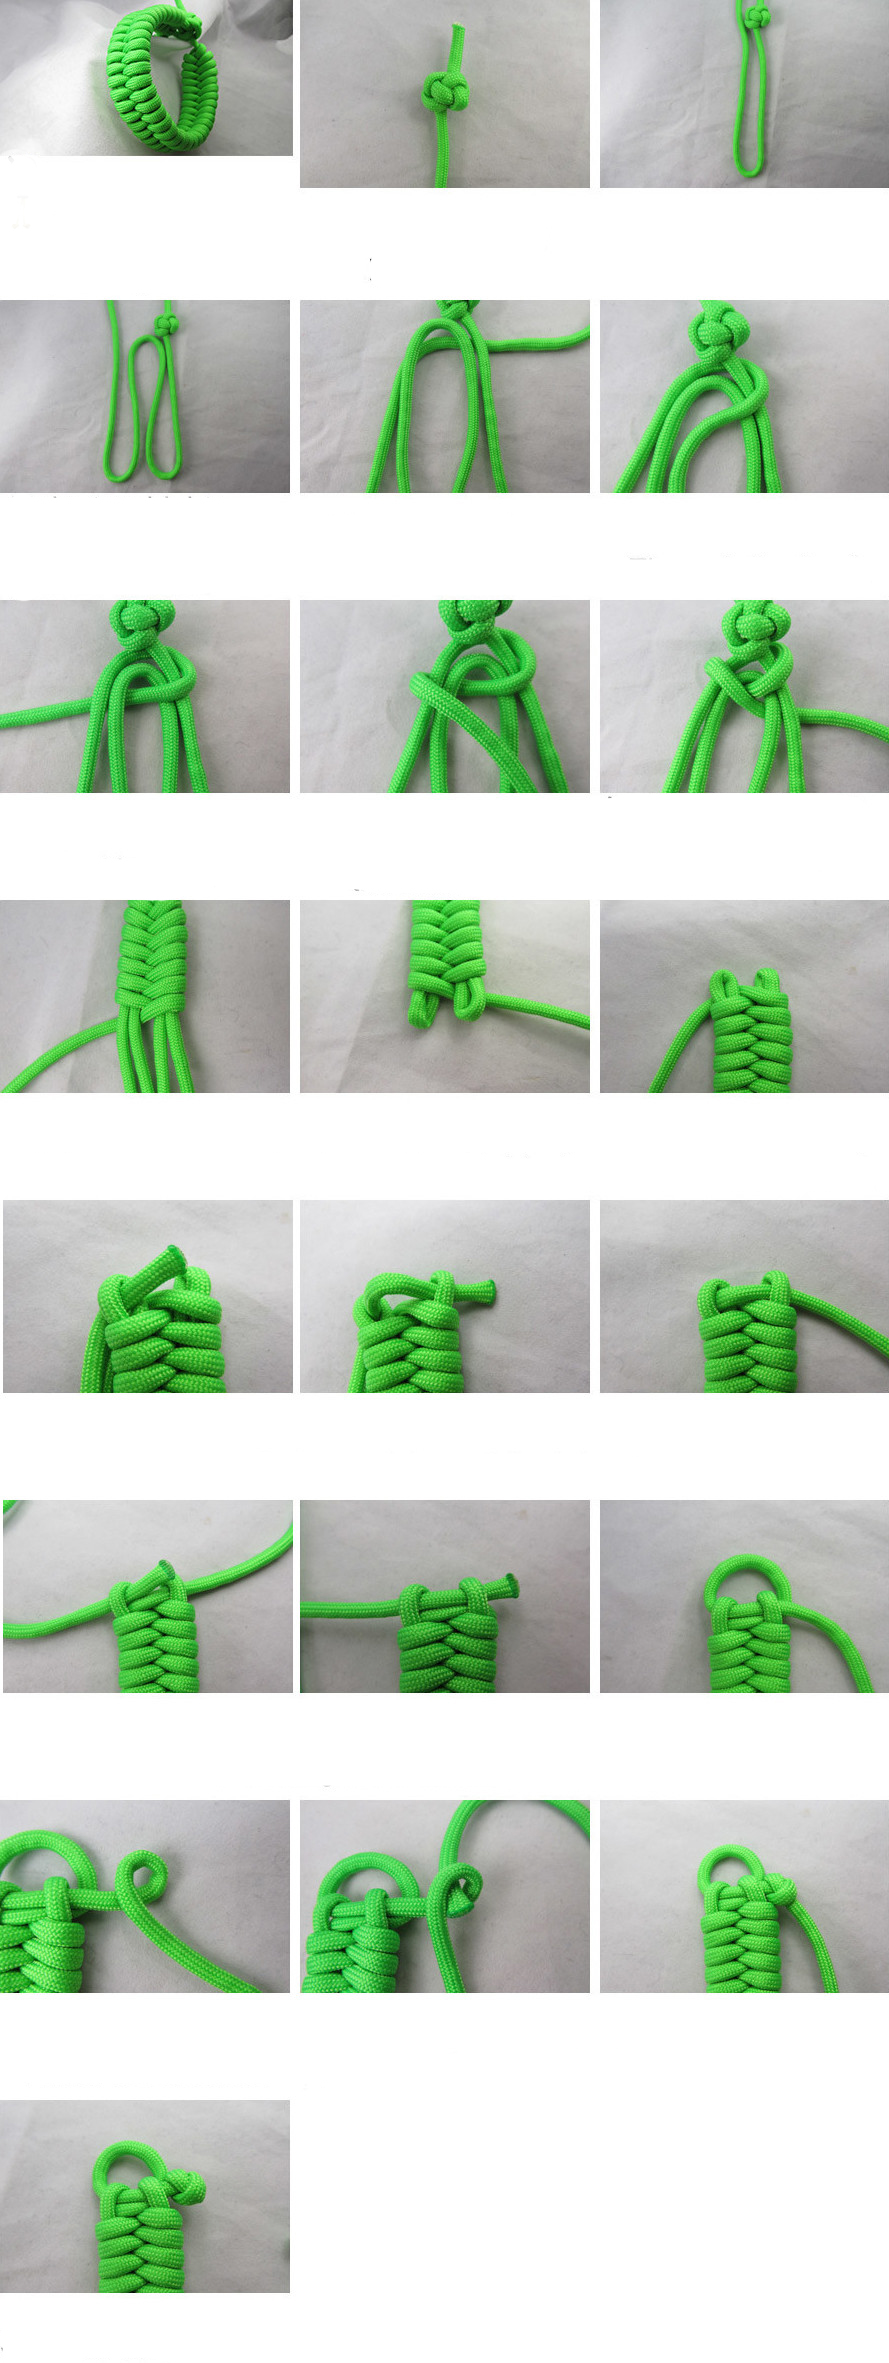 Браслет из паракорда своими руками: схемы плетения с фото и пояснениями